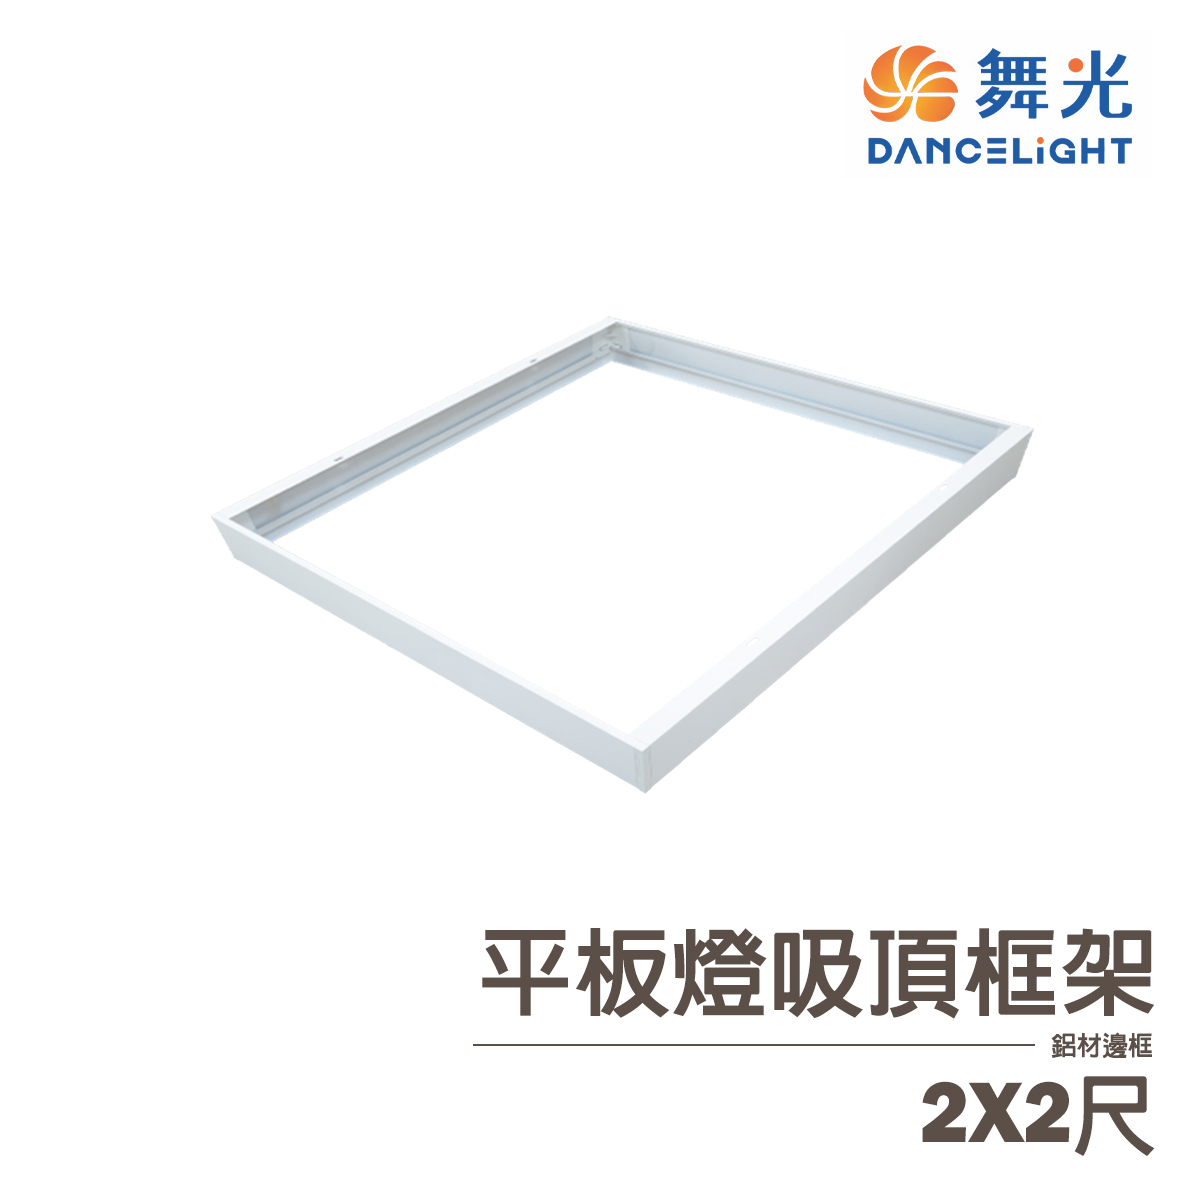 【舞光】平板燈吸頂框架 2X2尺 4X2尺 4X1尺 需搭配平板燈